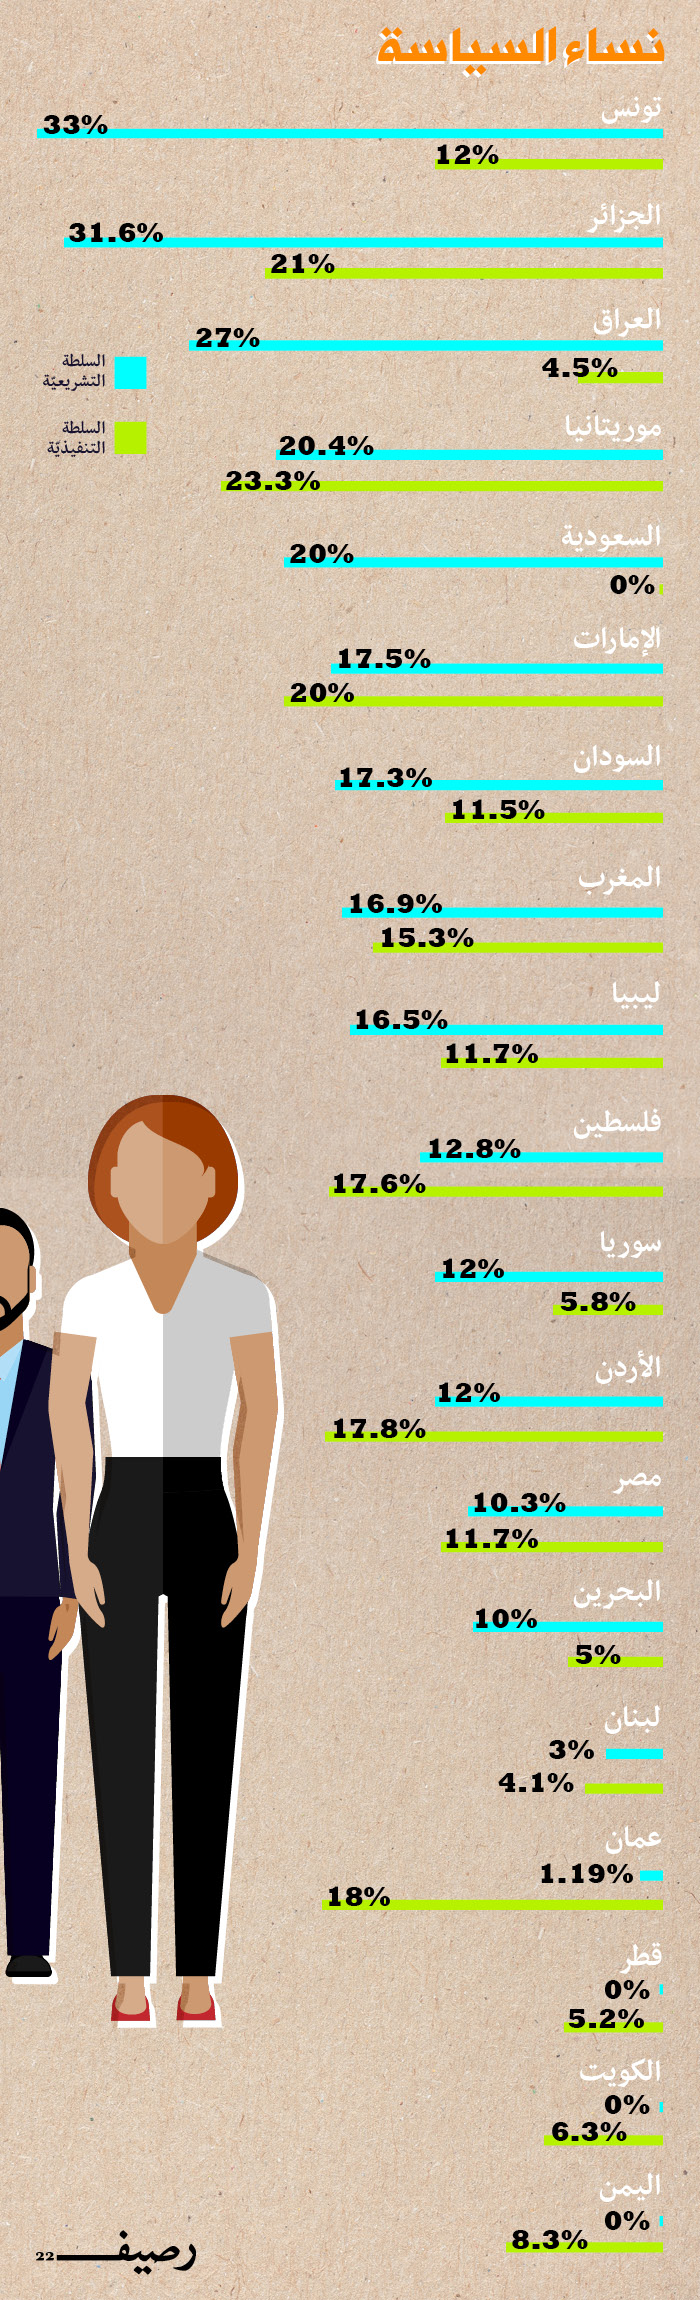 نساء السياسة العربيات - نساء السياسة في العالم العربي - إنفوجرافيك